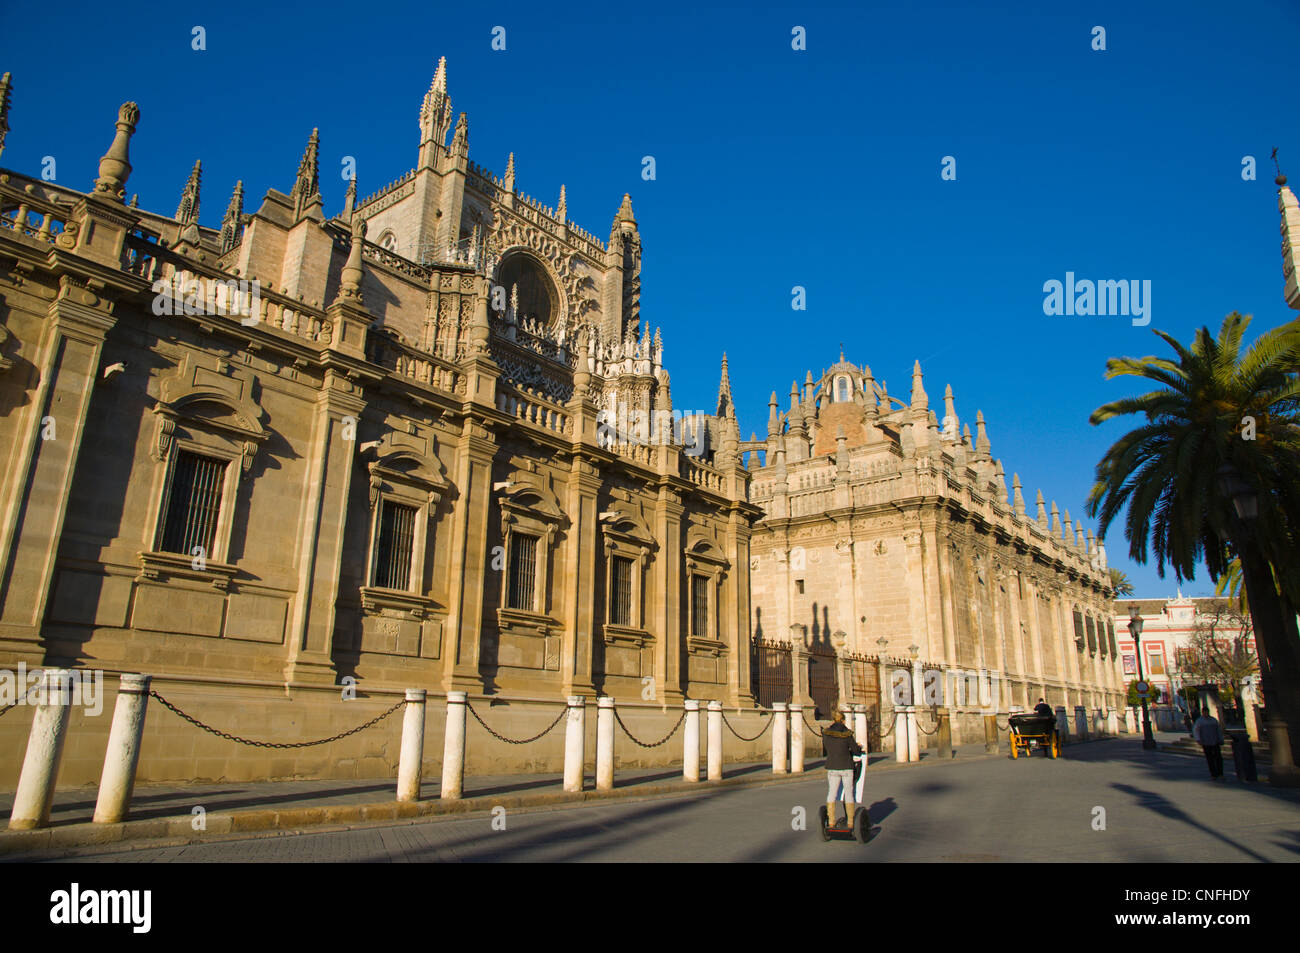 Catedral de Santa Maria de la Sede exterior Plaza Virgen de Los Reyes square Seville Andalusia Spain Stock Photo